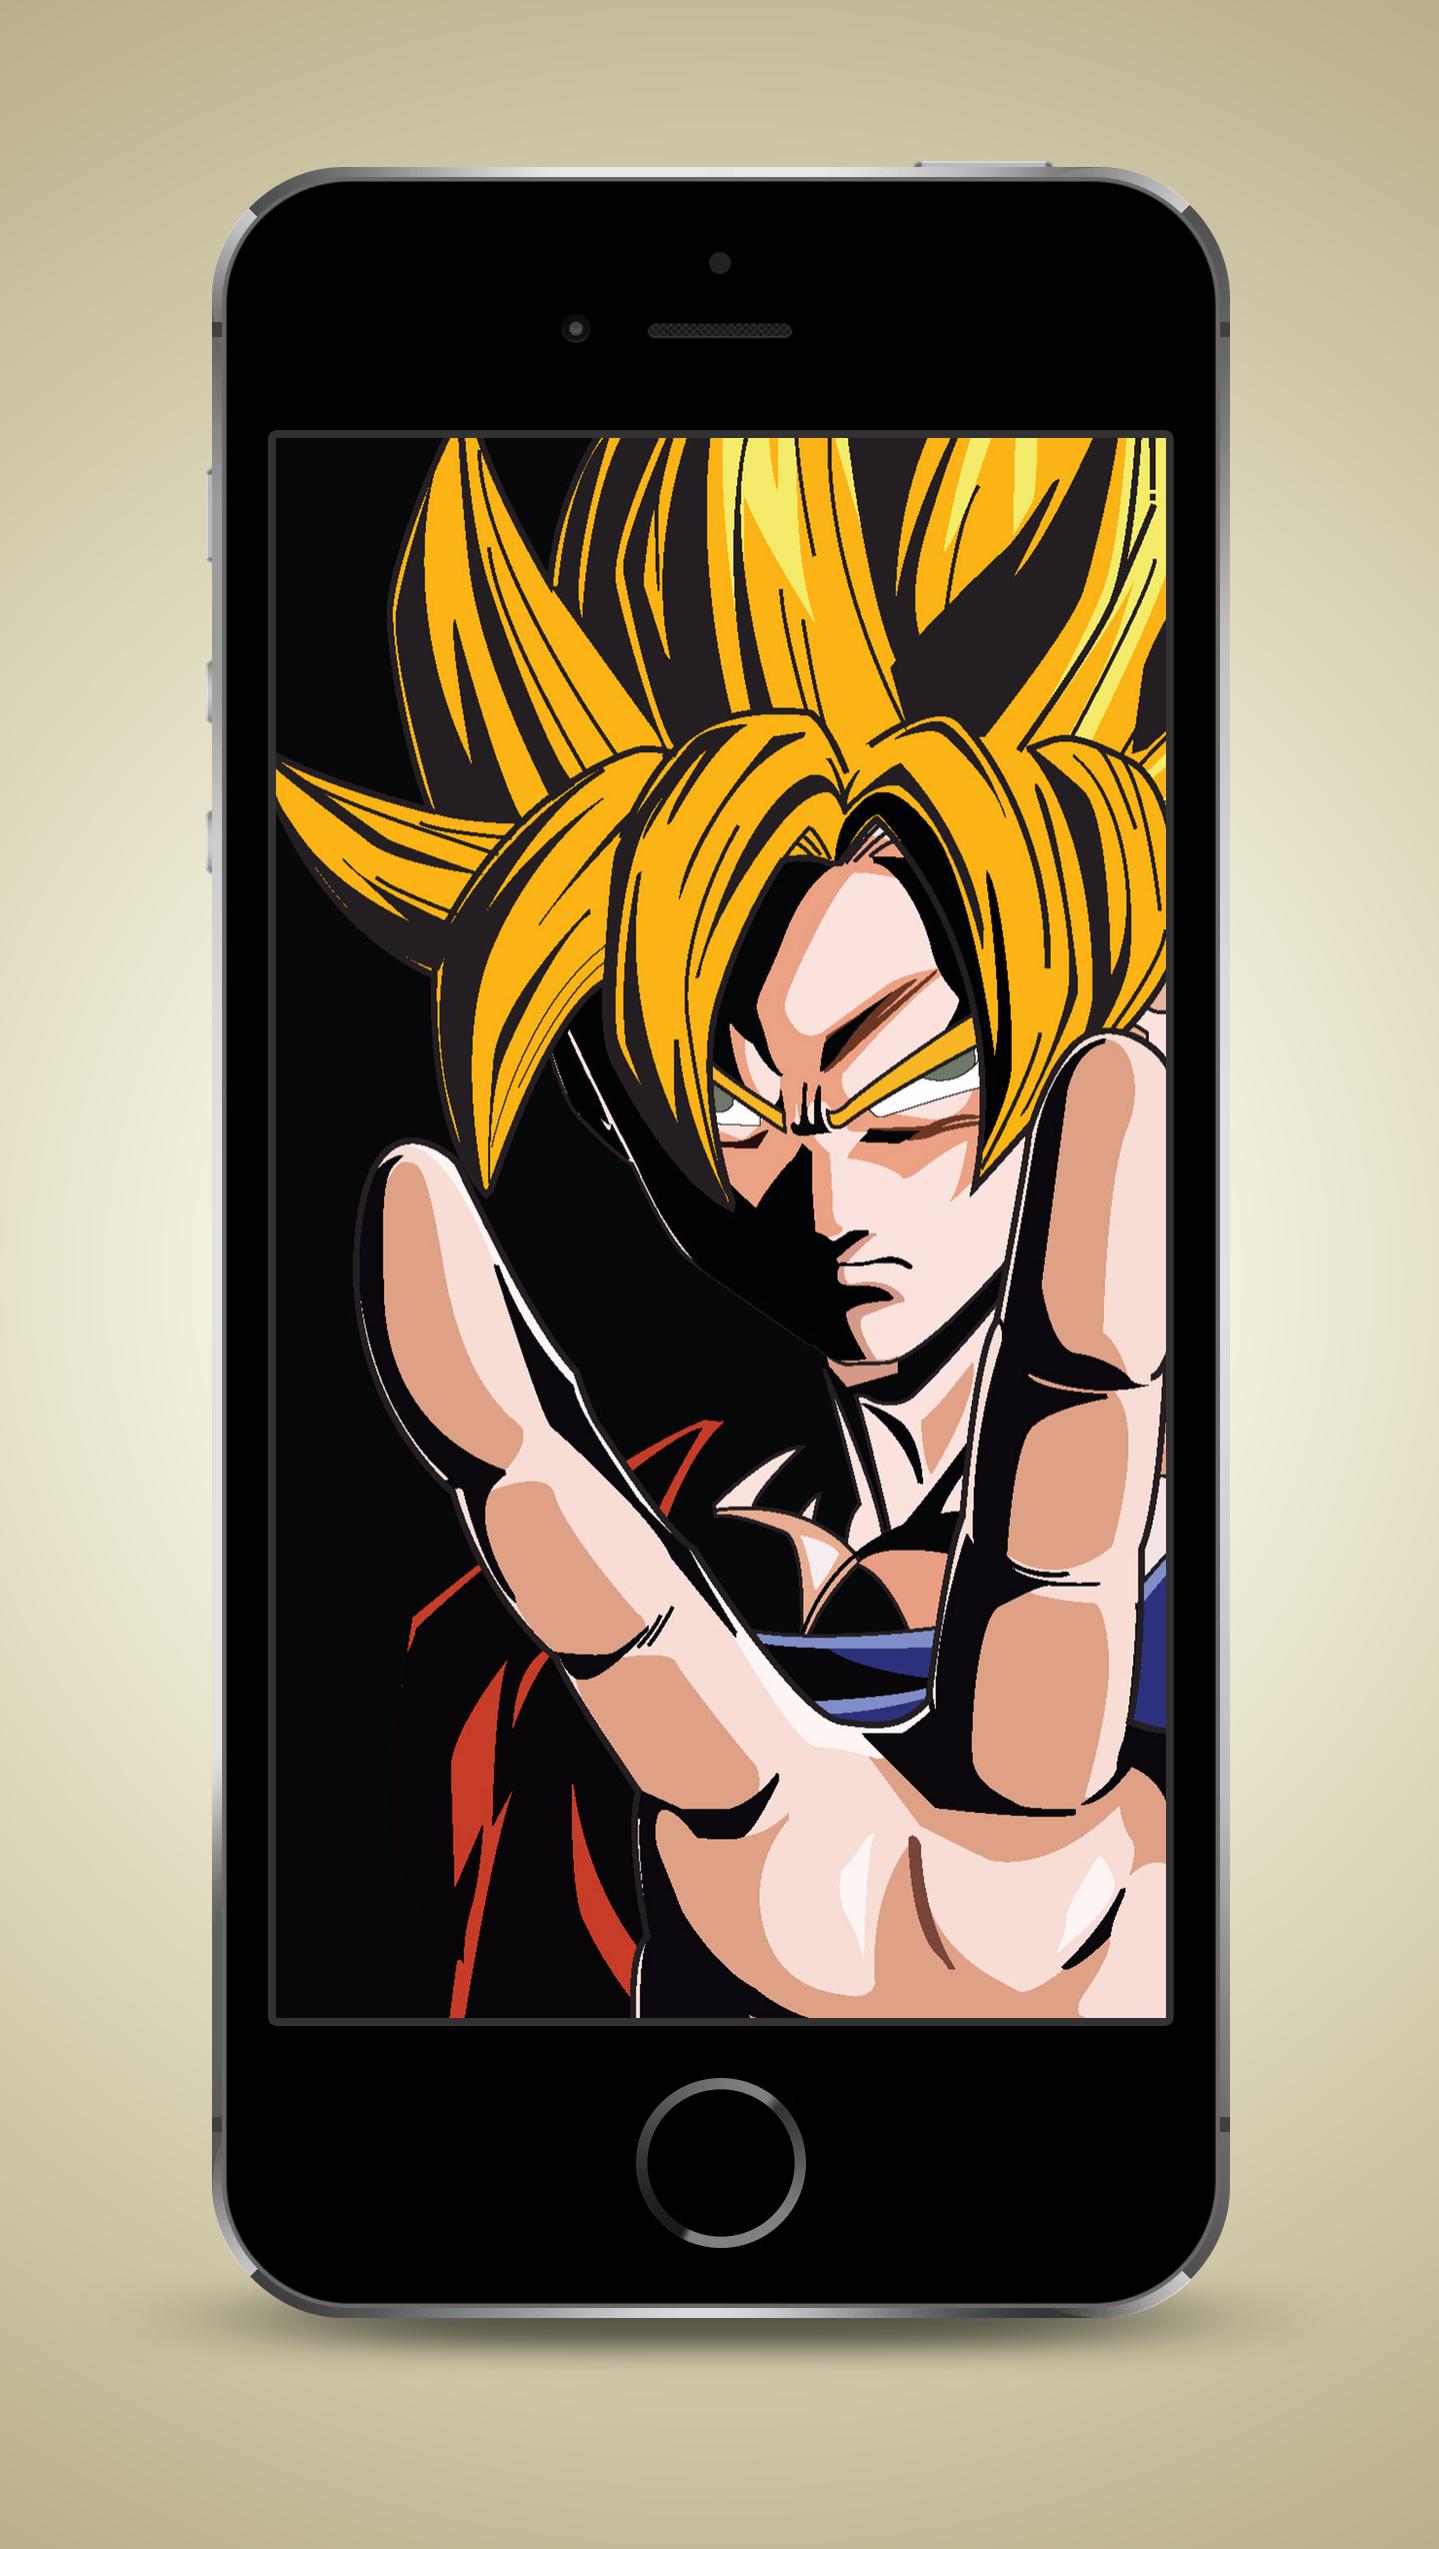 Ultra Instinct Goku Wallpapers HD 4K 2018 (for Android) là một trong những lựa chọn tuyệt vời nhất cho điện thoại Android của bạn. Cùng tận hưởng một ảnh nền đầy sức mạnh và uy lực với những tấm hình được chọn lọc kỹ càng. Hãy để hình nền này giúp bạn thấy khác biệt.